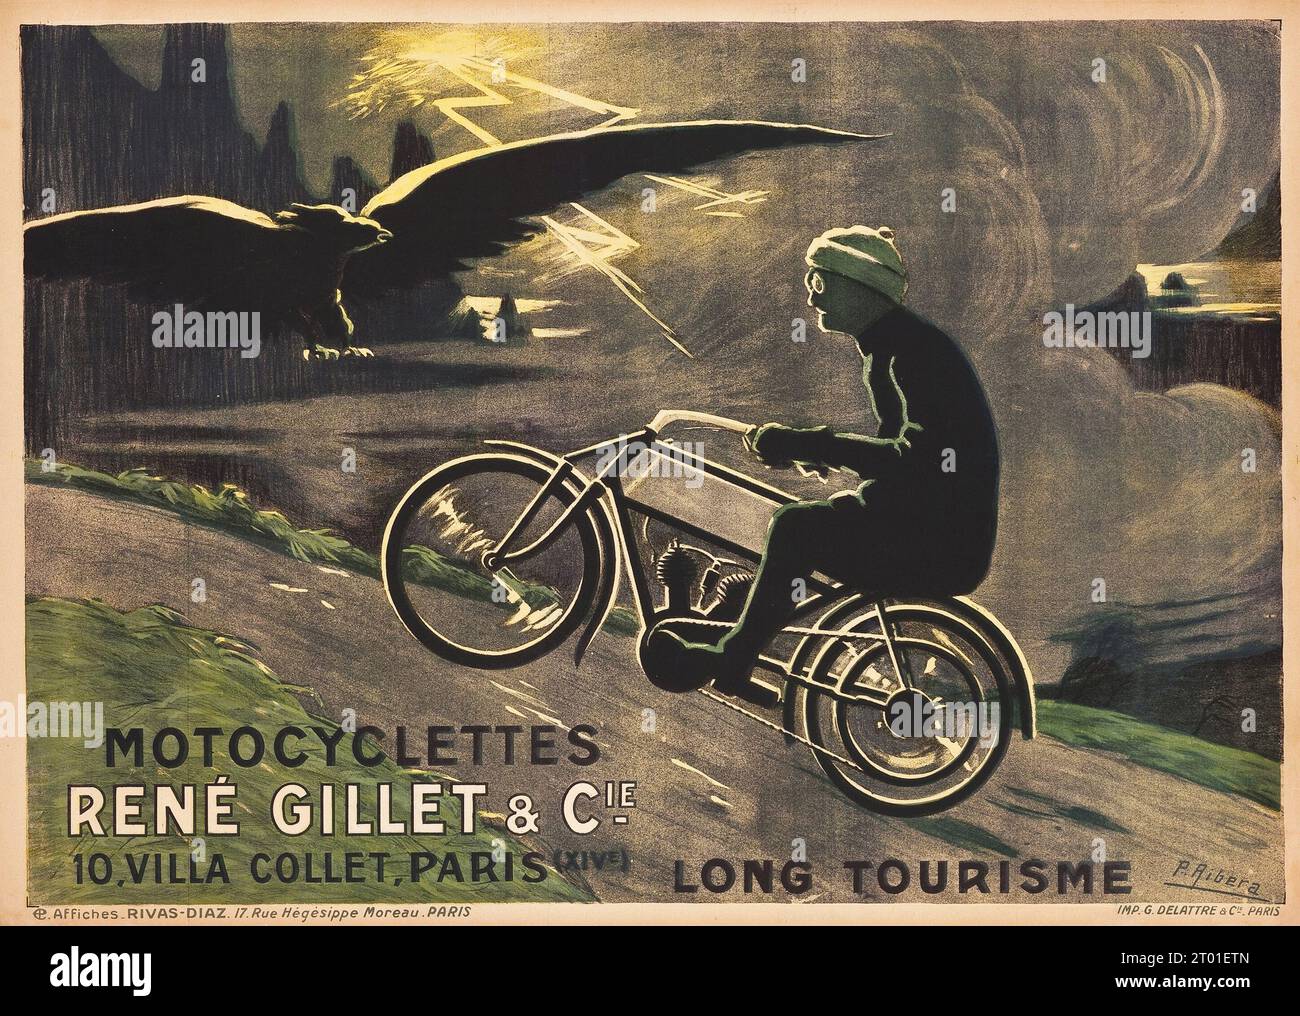 Poster motociclistico Francia - Motocyclettes Rene Gillet & Cie.. Long tourisme. (Circa 1920). Poster pubblicitario francese - uomo in moto. Foto Stock